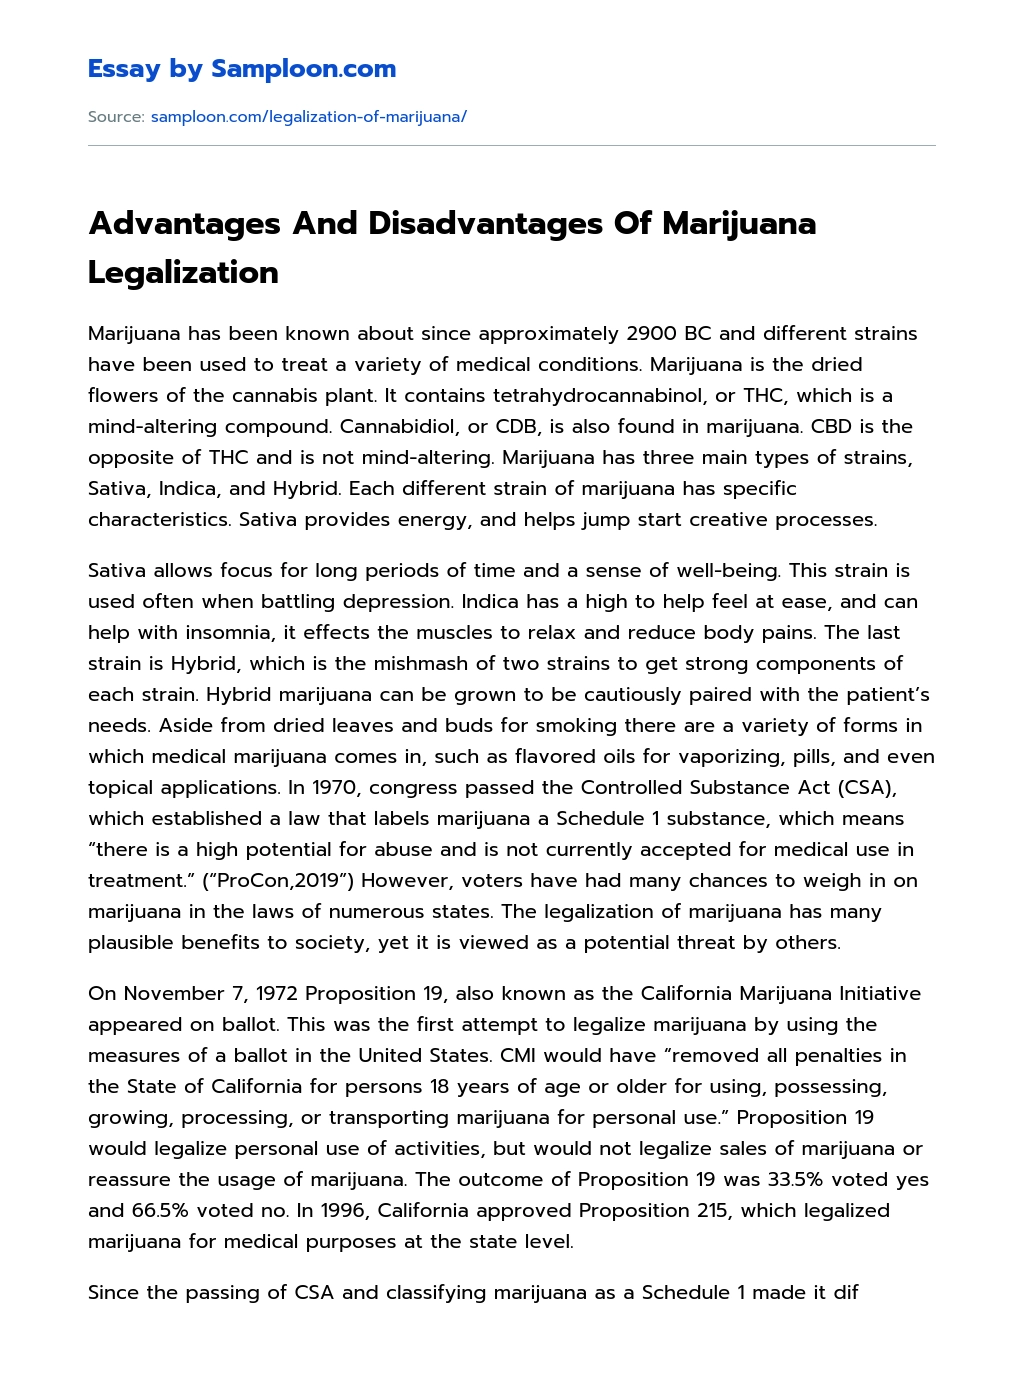 Advantages And Disadvantages Of Marijuana Legalization essay